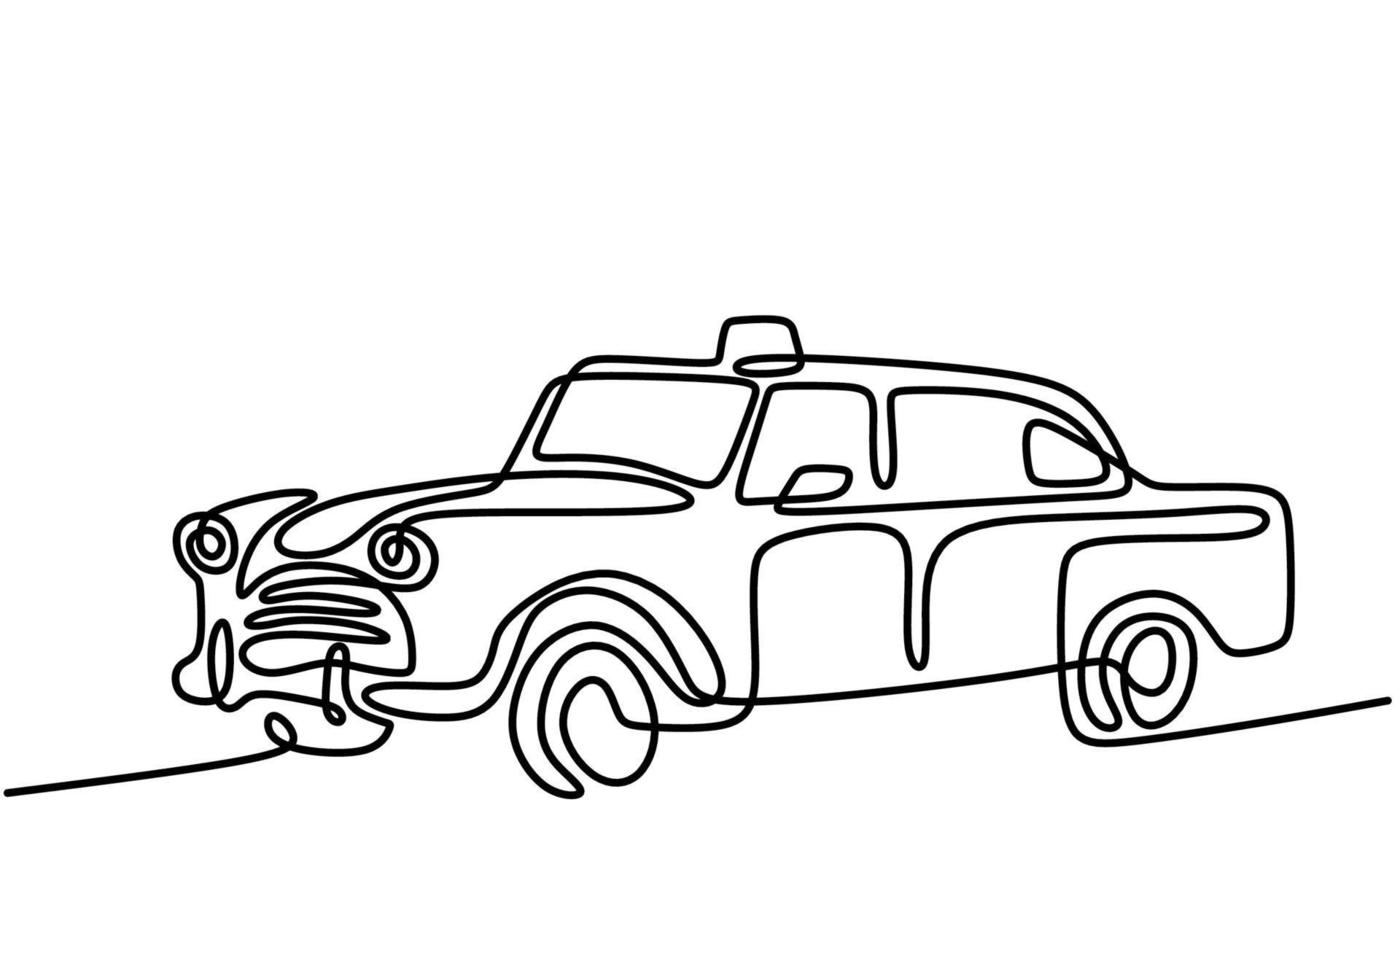 Retro-Auto im Zeichenstil der kontinuierlichen Strichzeichnung. klassisches Limousinenauto lokalisiert auf weißem Hintergrund. Vintage Automobil minimalistische schwarze lineare Skizze minimalistischen Stil. Vektorillustration vektor